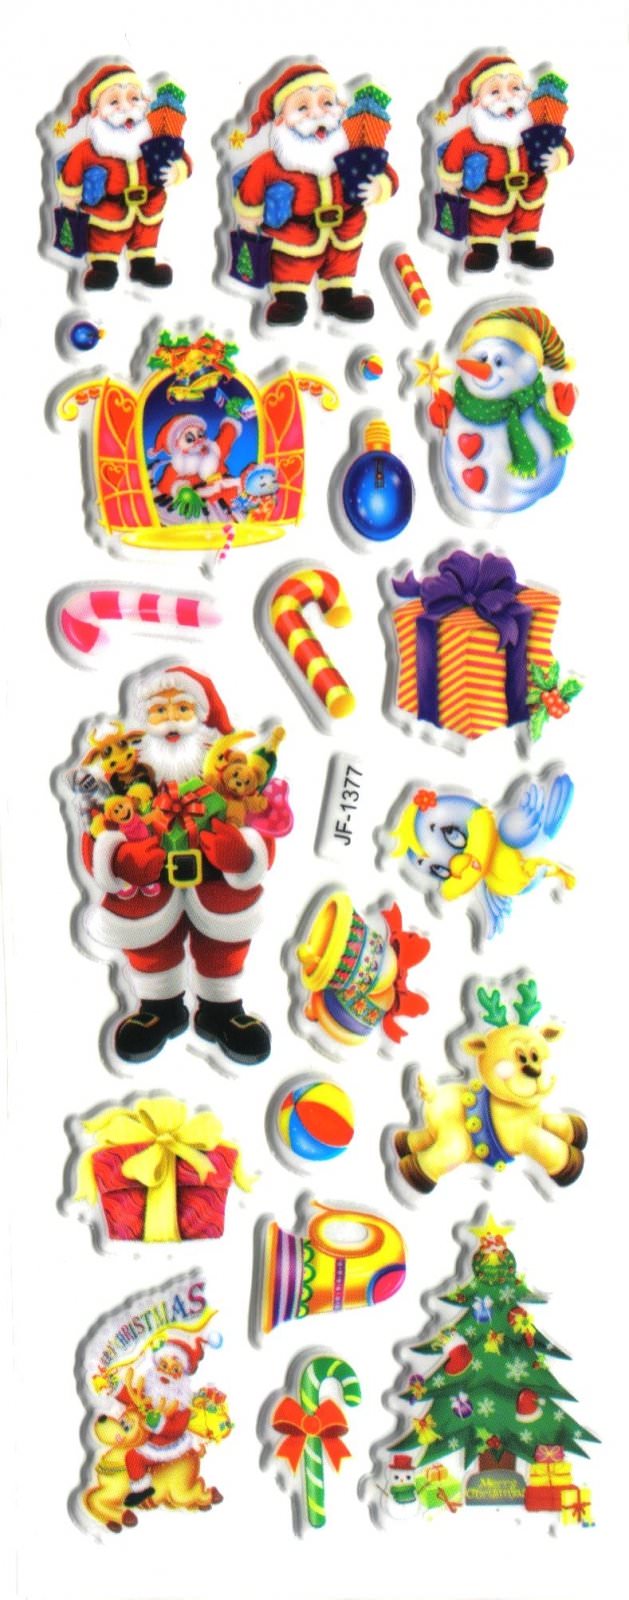 Noel papa noel cadeaux fete gommette autocollant stickers enfant decoration scrapbooking JF 1377